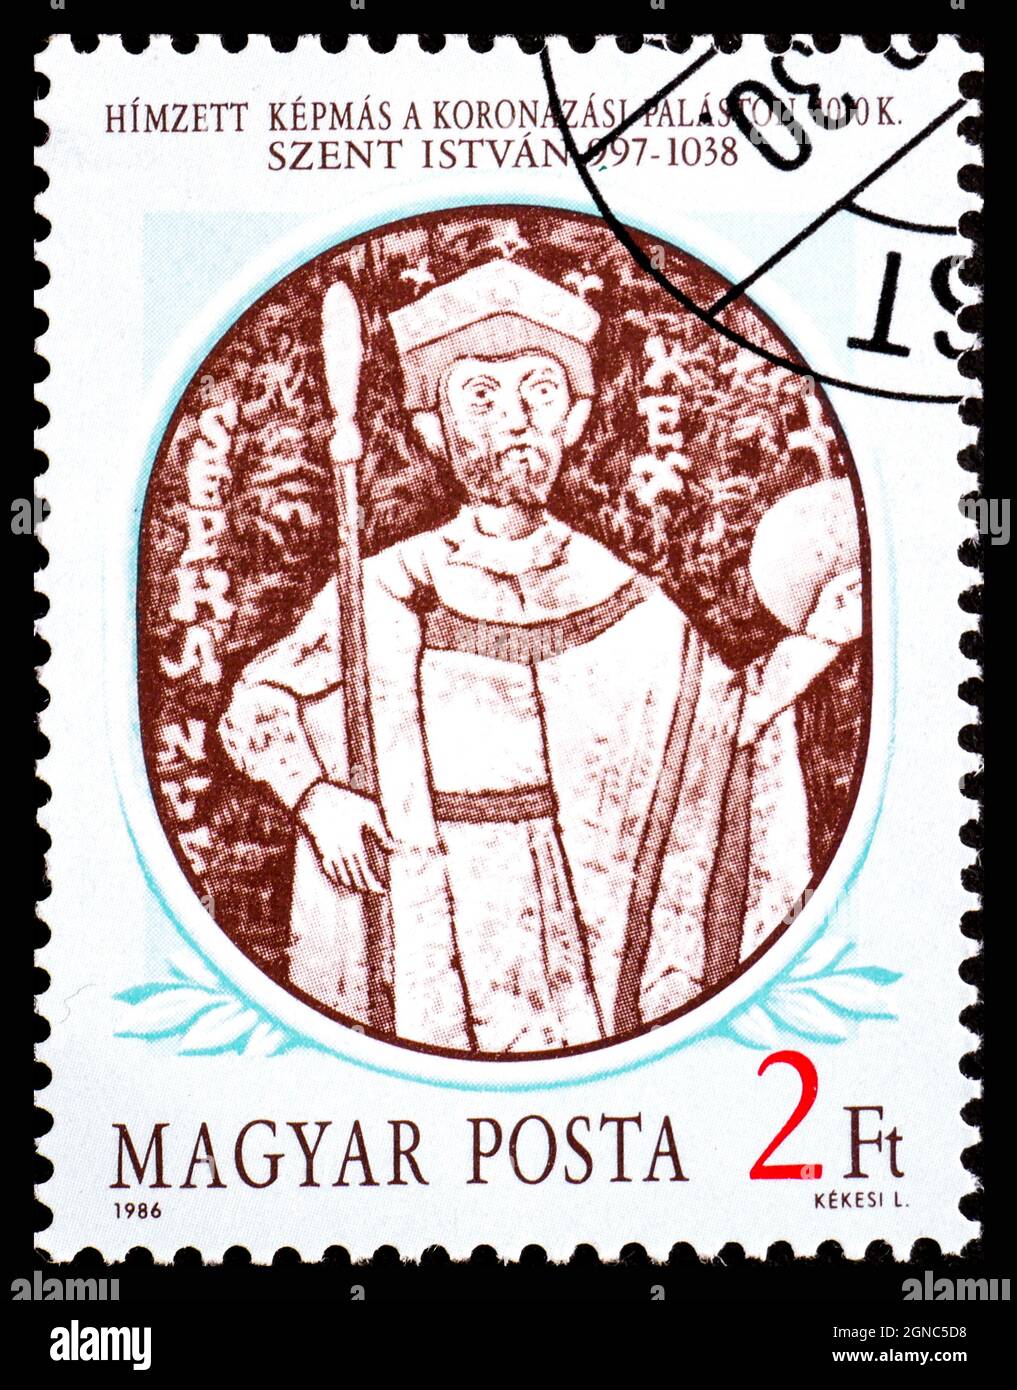 HONGRIE - VERS 1986 : un timbre imprimé en Hongrie à partir du 1er numéro des rois hongrois montre le manteau de couronnement de St. Stephen I, 1030 Banque D'Images